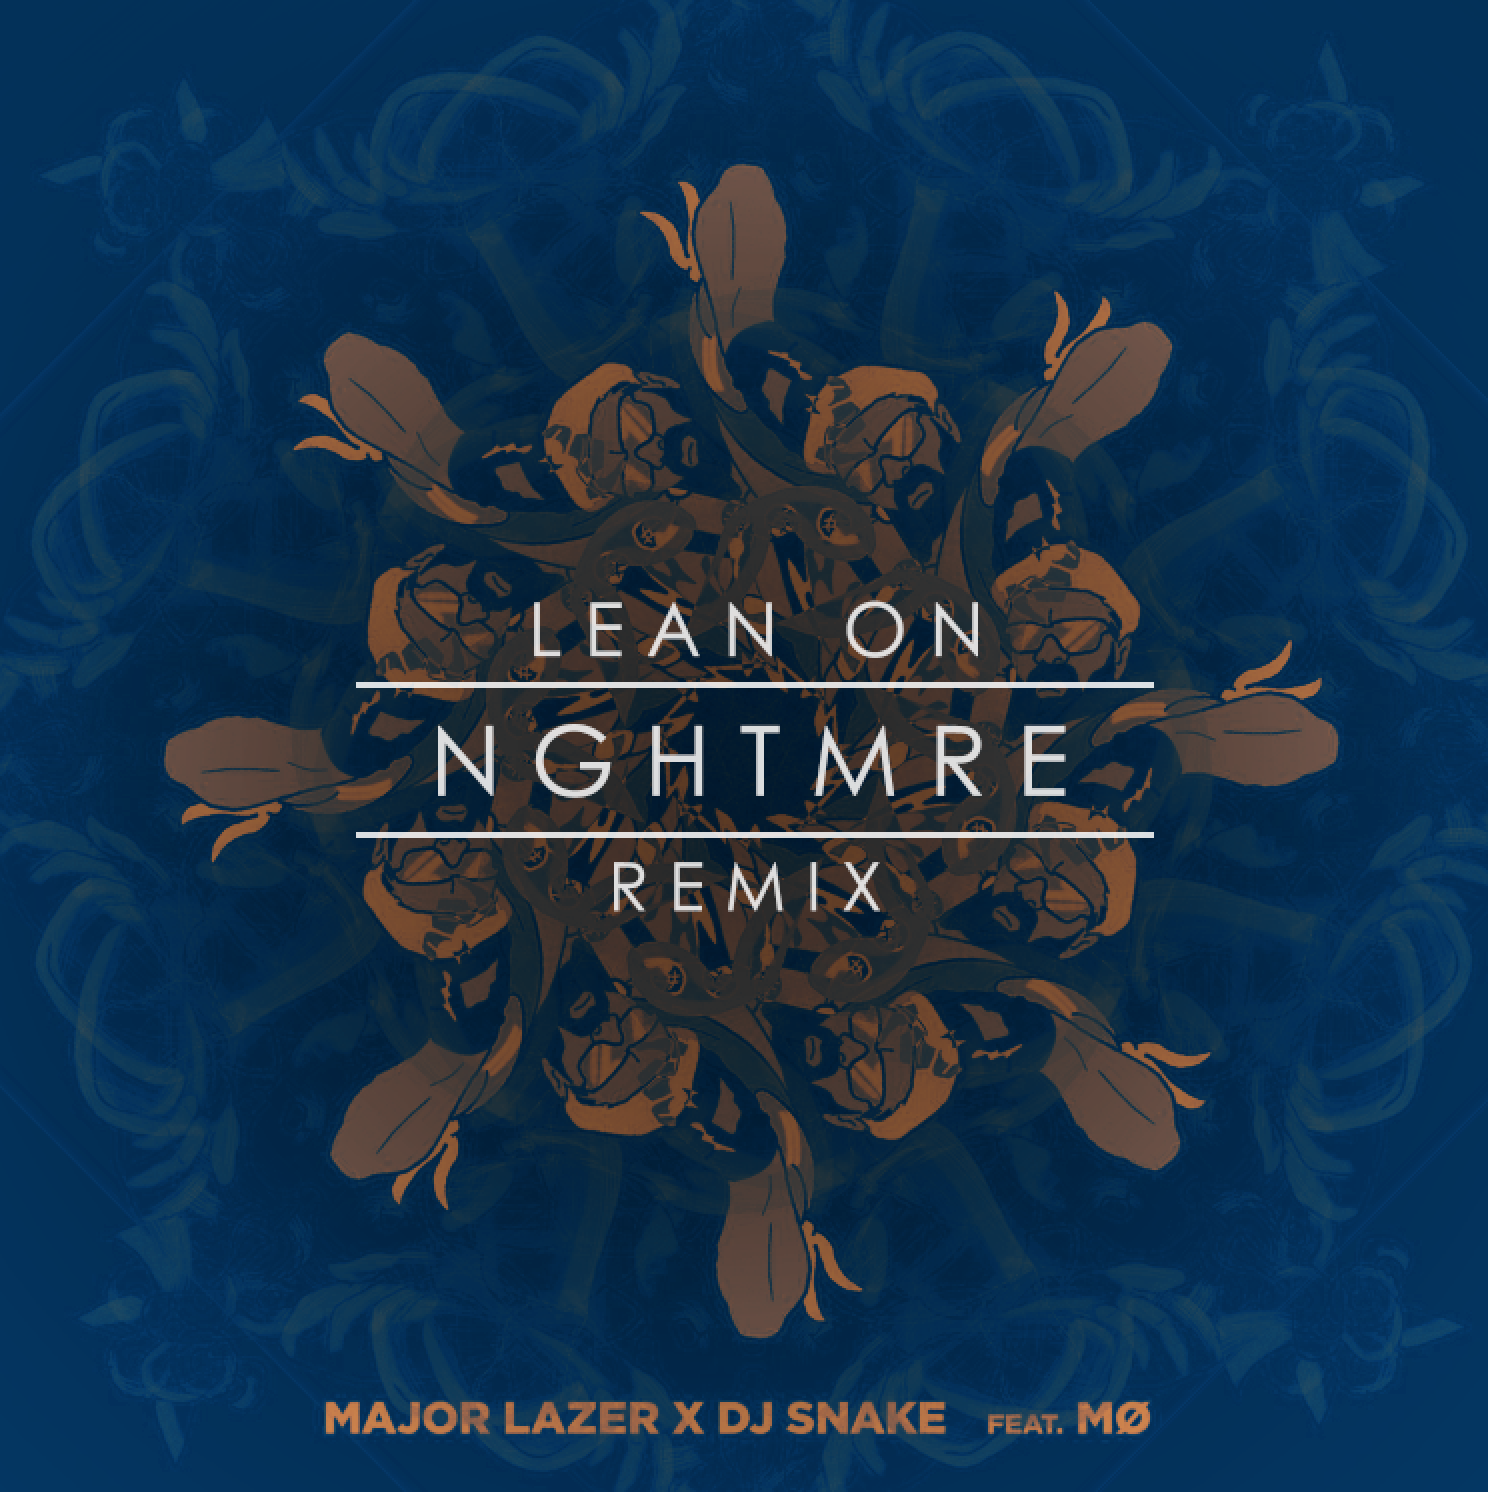 Major lazer remix. Major Lazer & DJ Snake - Lean on (Slowed + Reverb).